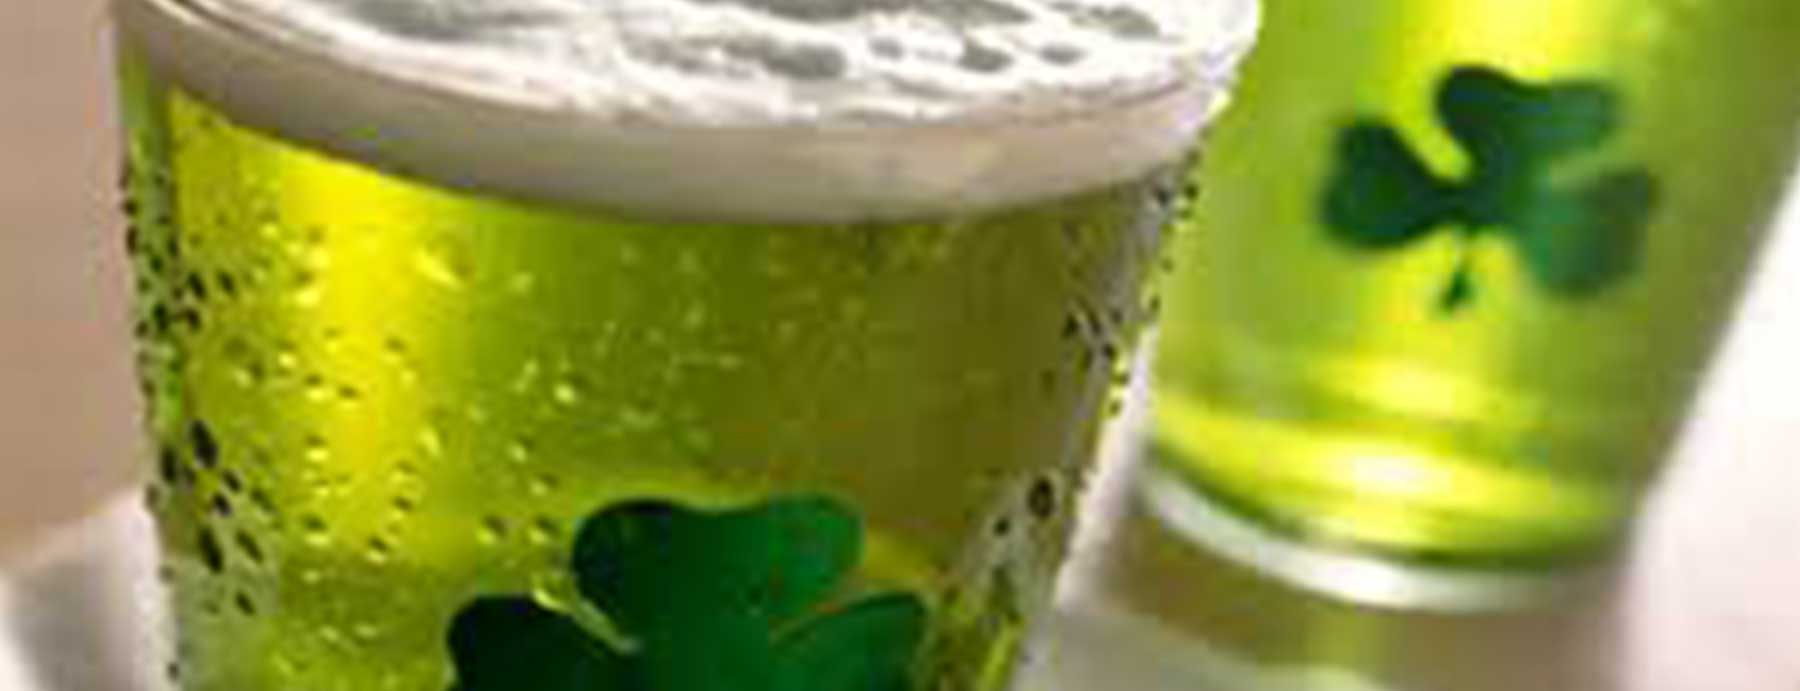 green beer Blank Template - Imgflip